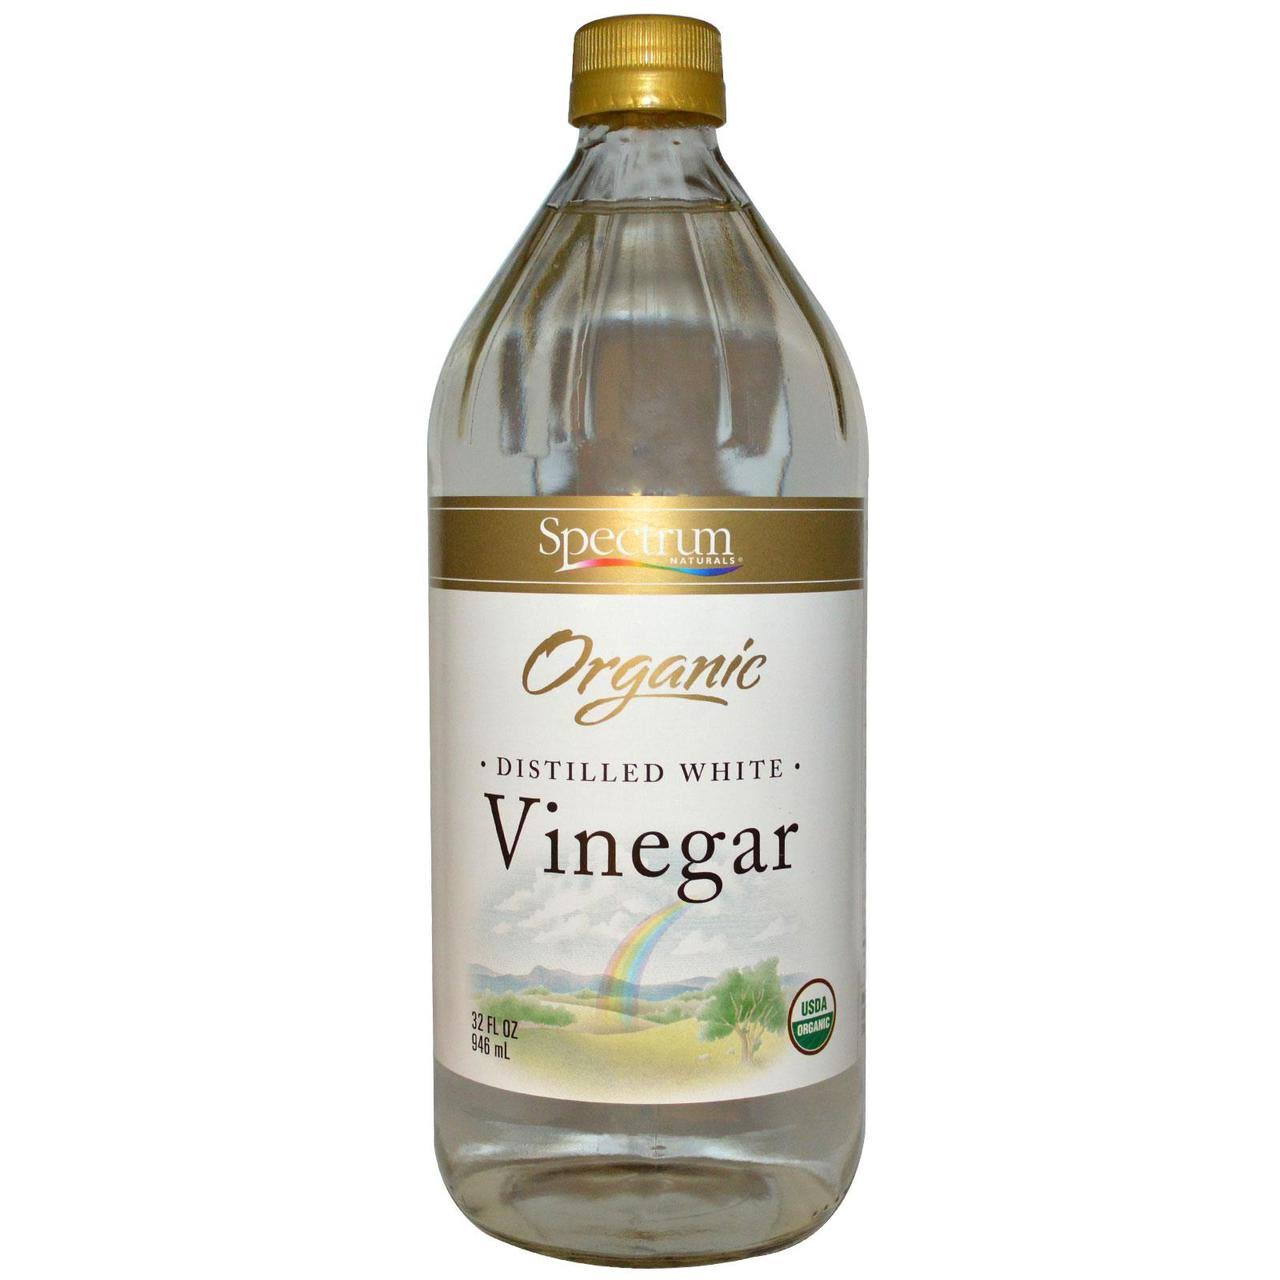 Spectrum Organic Distilled White Vinegar